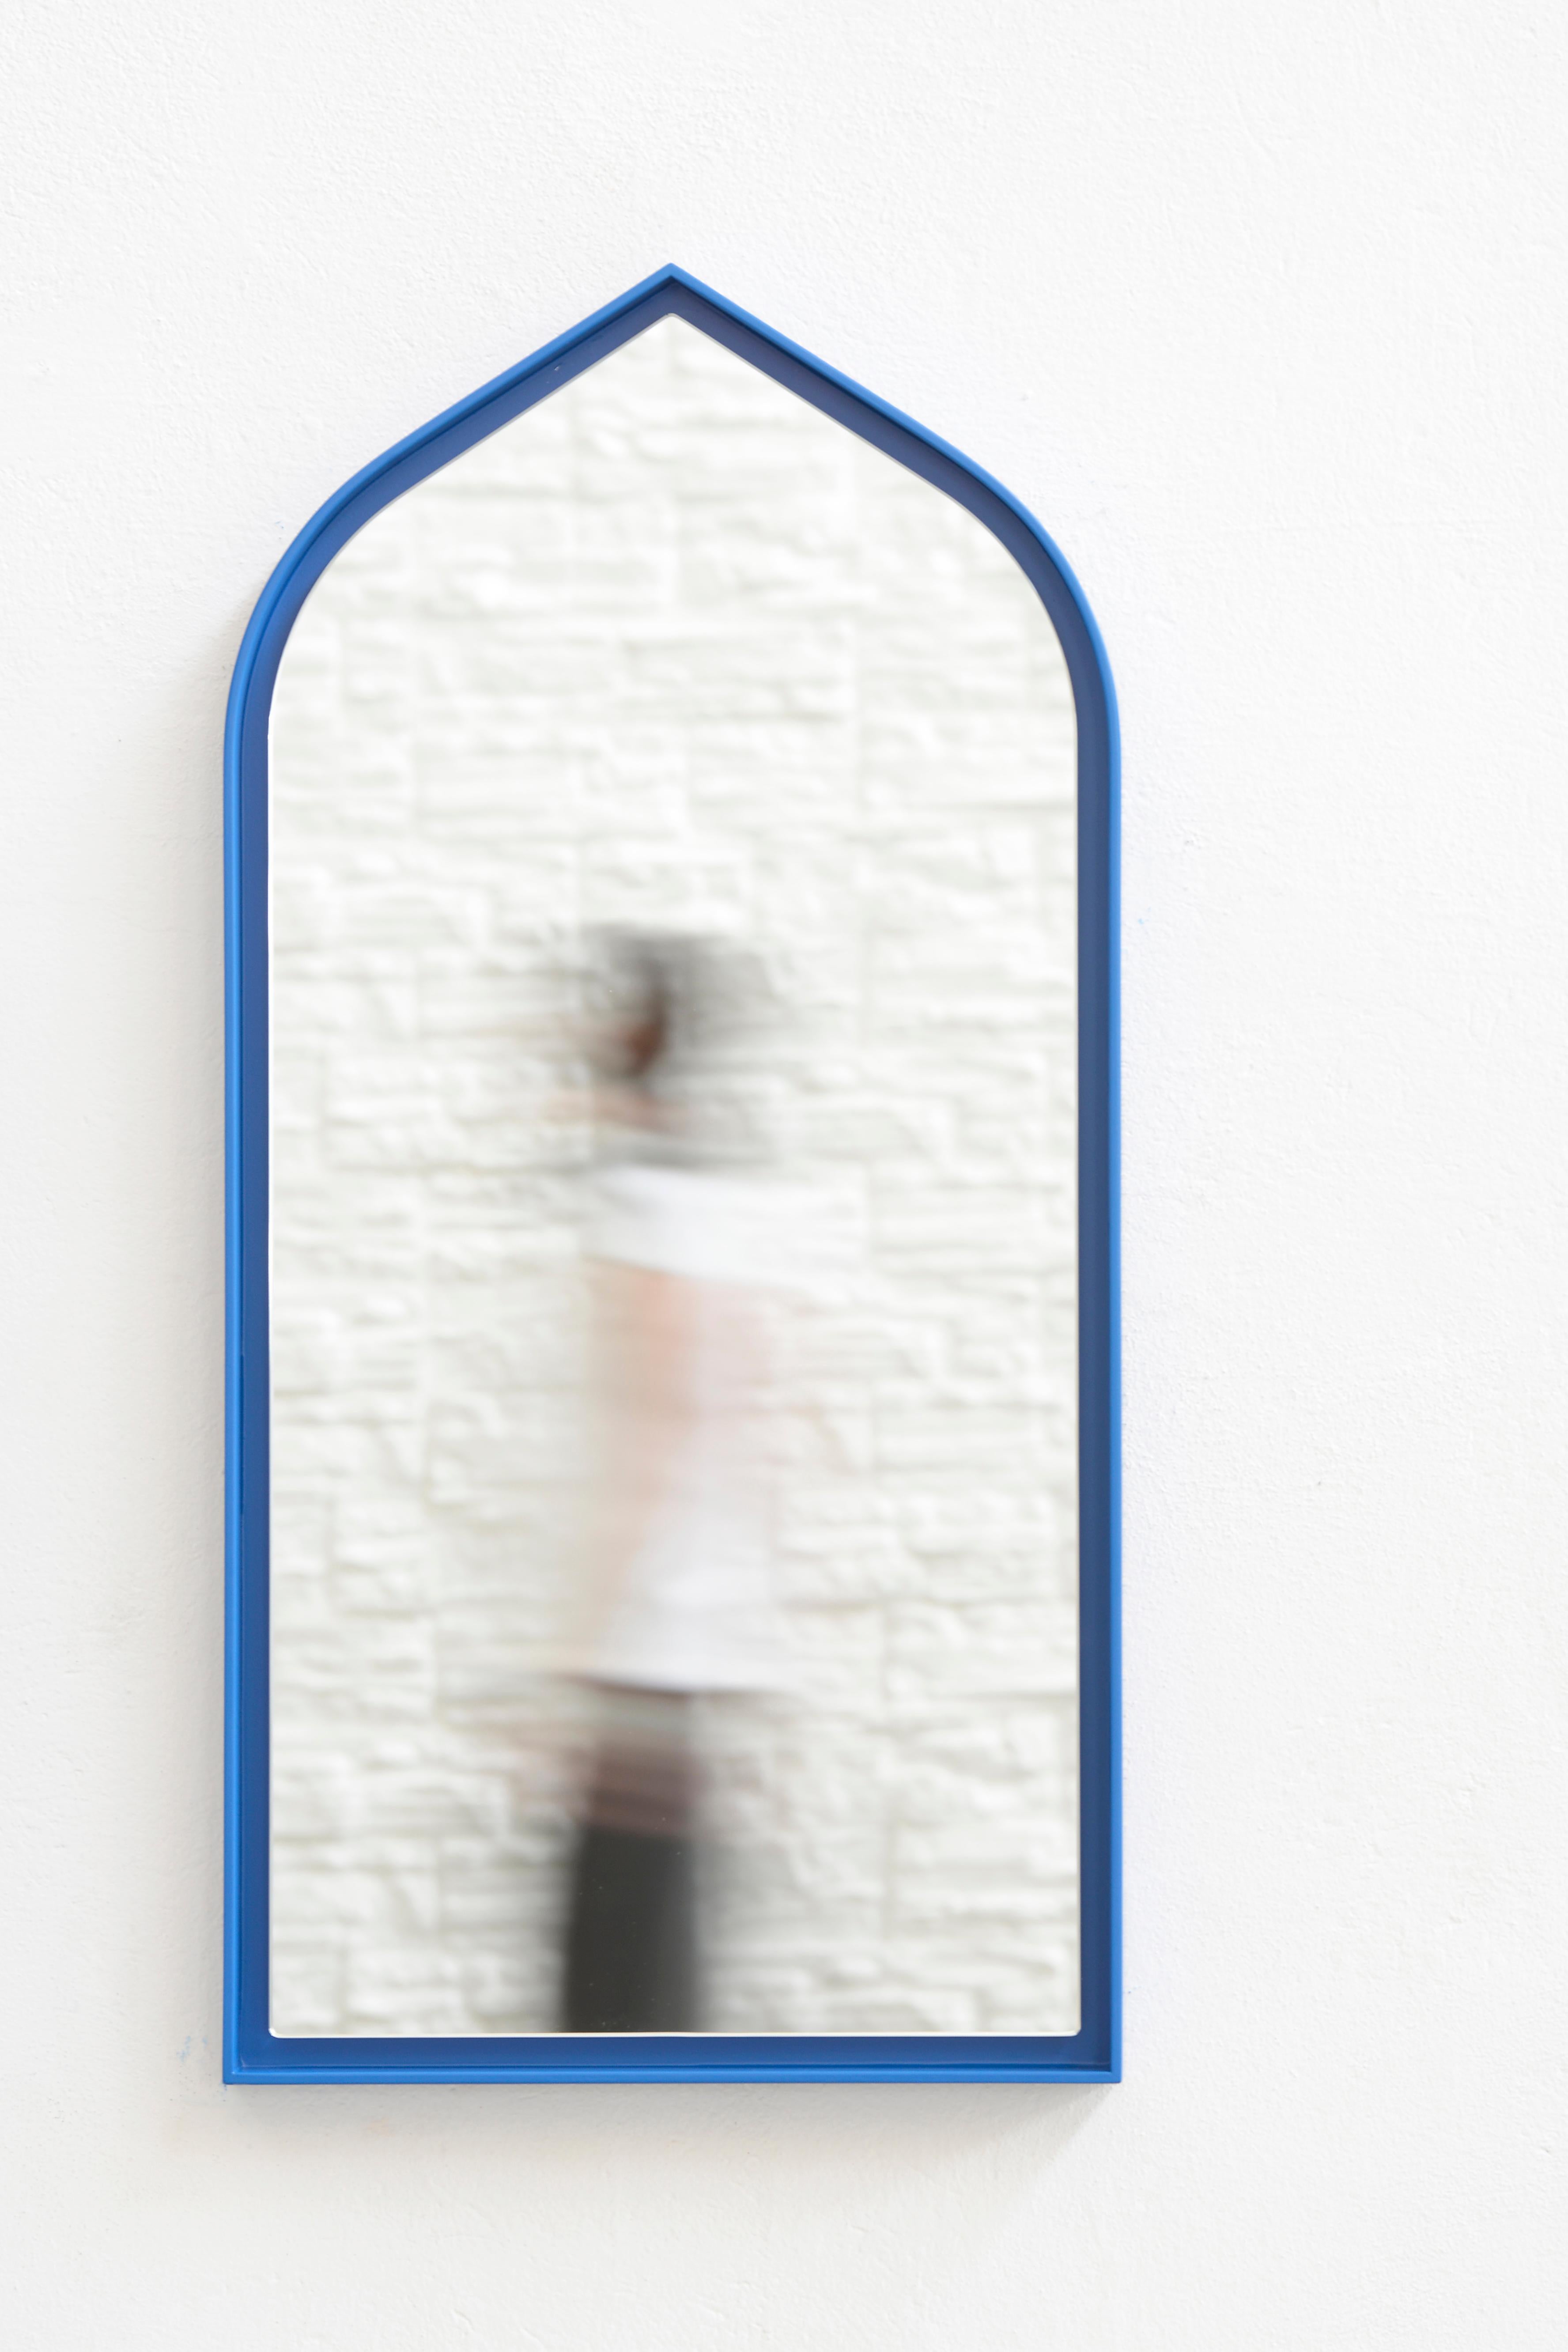 Miroir Panorami par Secondome Edizioni
Design/One : ZAVEN.
Dimensions : D 5 x L 45 x H 90 cm.
MATERIAL : Cadre et miroir en bois laqué.

Collectional / Production : Secondome. Disponible en blanc et en bleu. Également disponible en taille plus